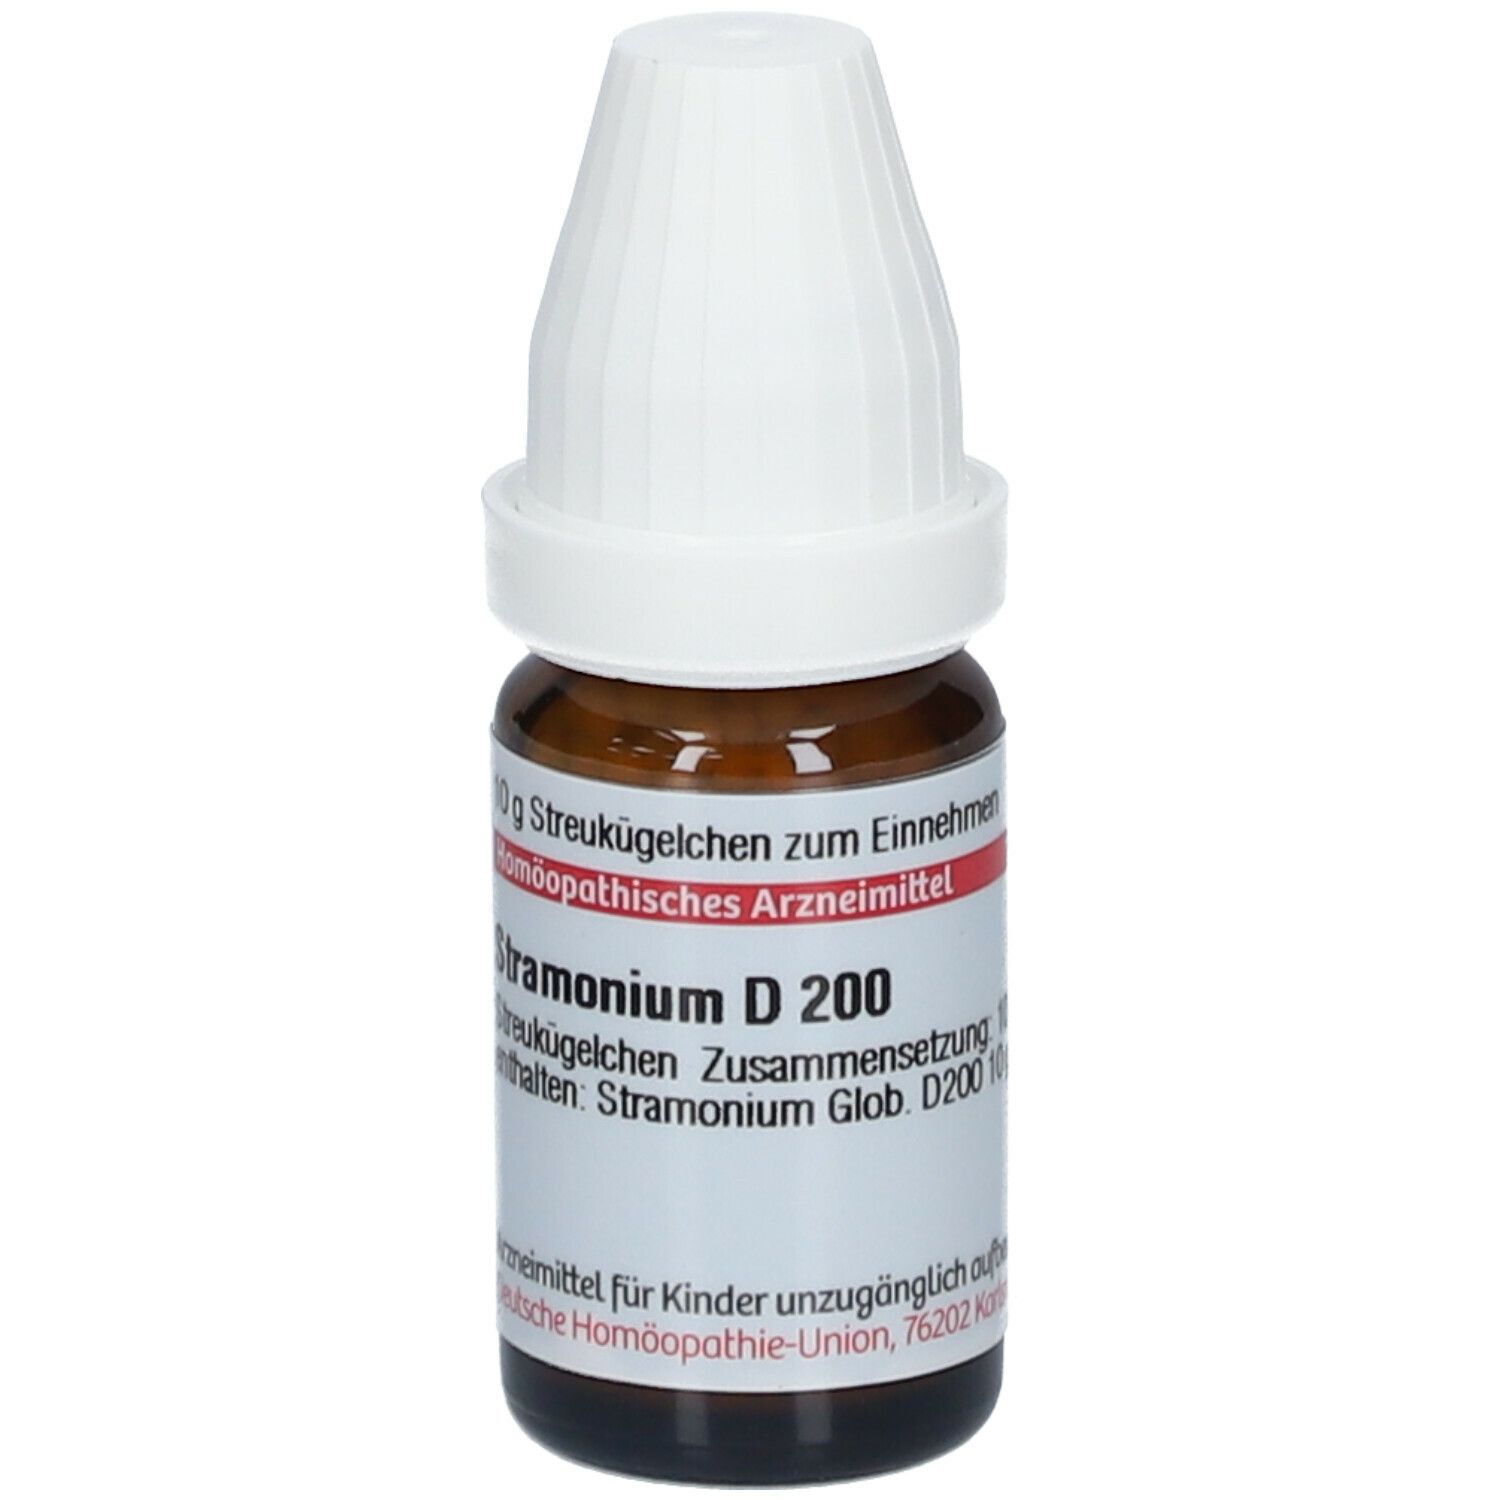 DHU Stamonium D200